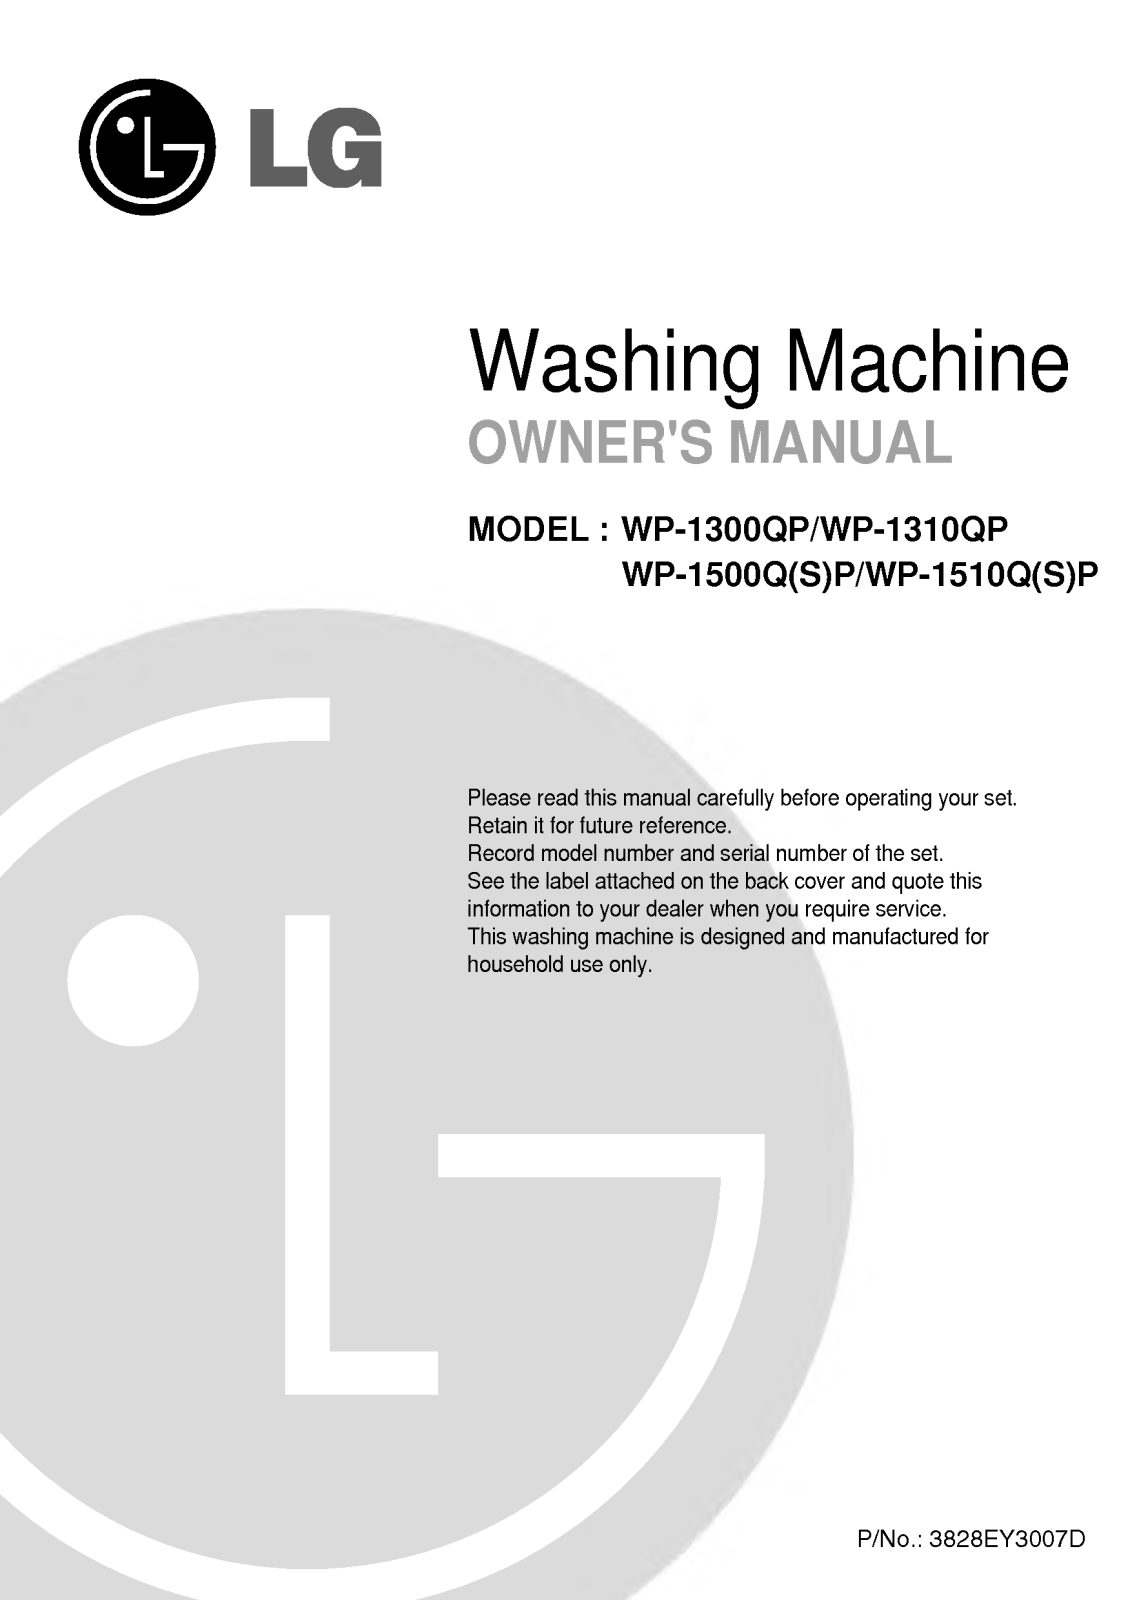 LG WP-1310QP, WP-1510Q, WP-1500Q, WP-1300QP User Manual